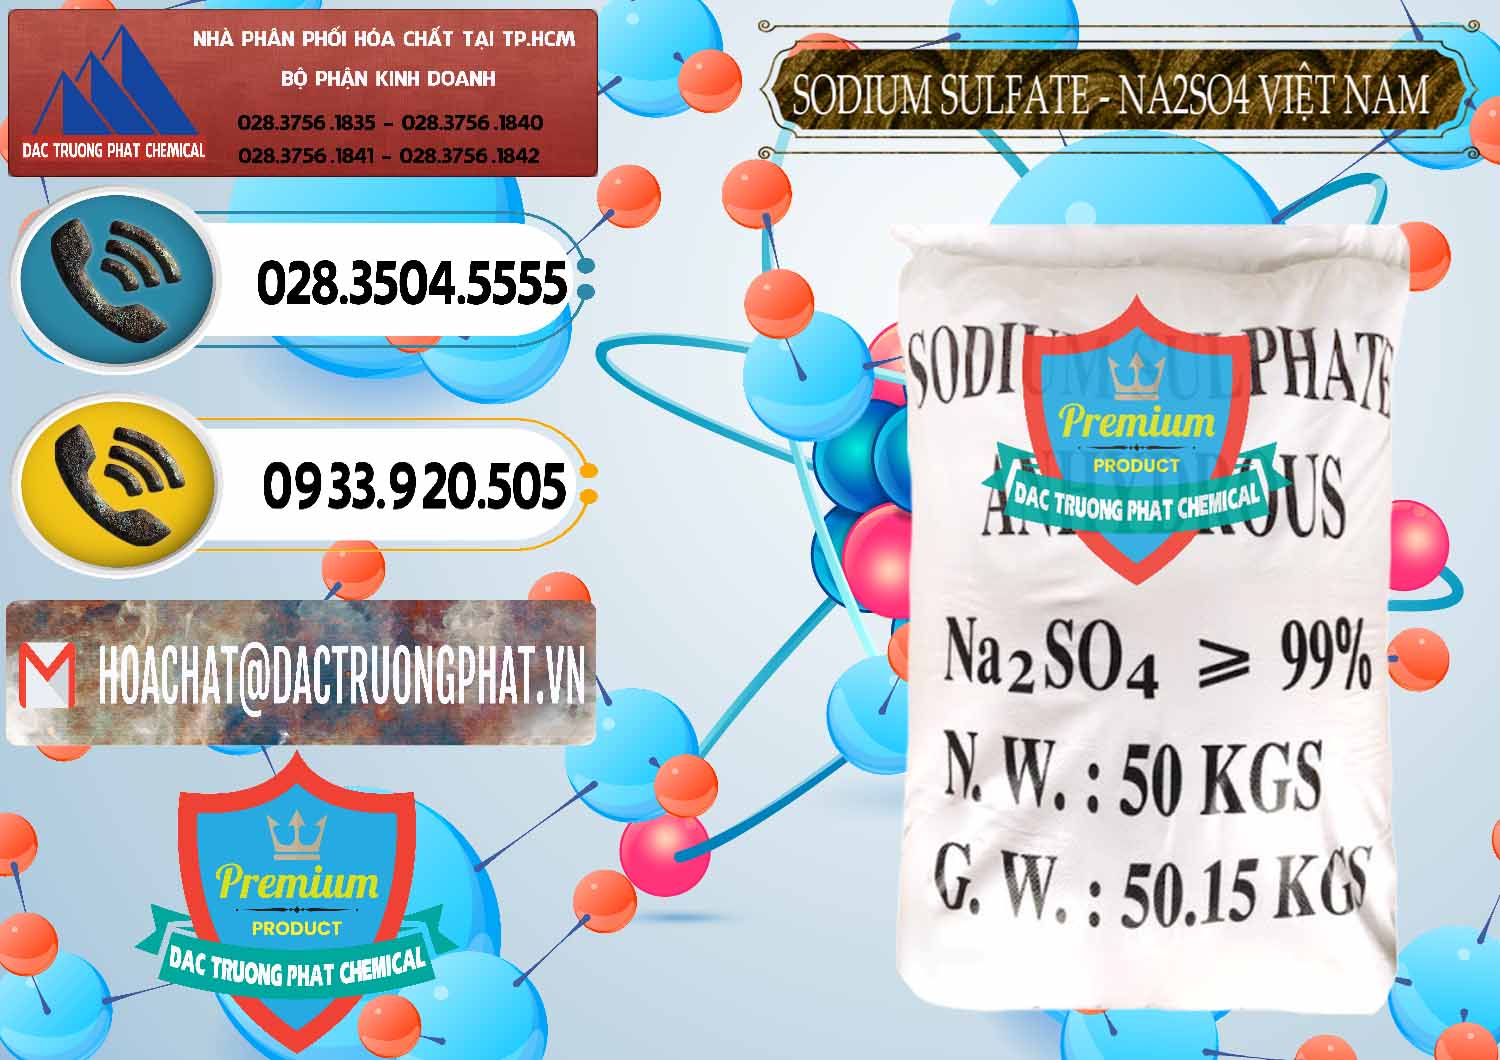 Nhà cung cấp ( phân phối ) Sodium Sulphate - Muối Sunfat Na2SO4 Việt Nam - 0355 - Chuyên bán ( cung ứng ) hóa chất tại TP.HCM - hoachatdetnhuom.vn